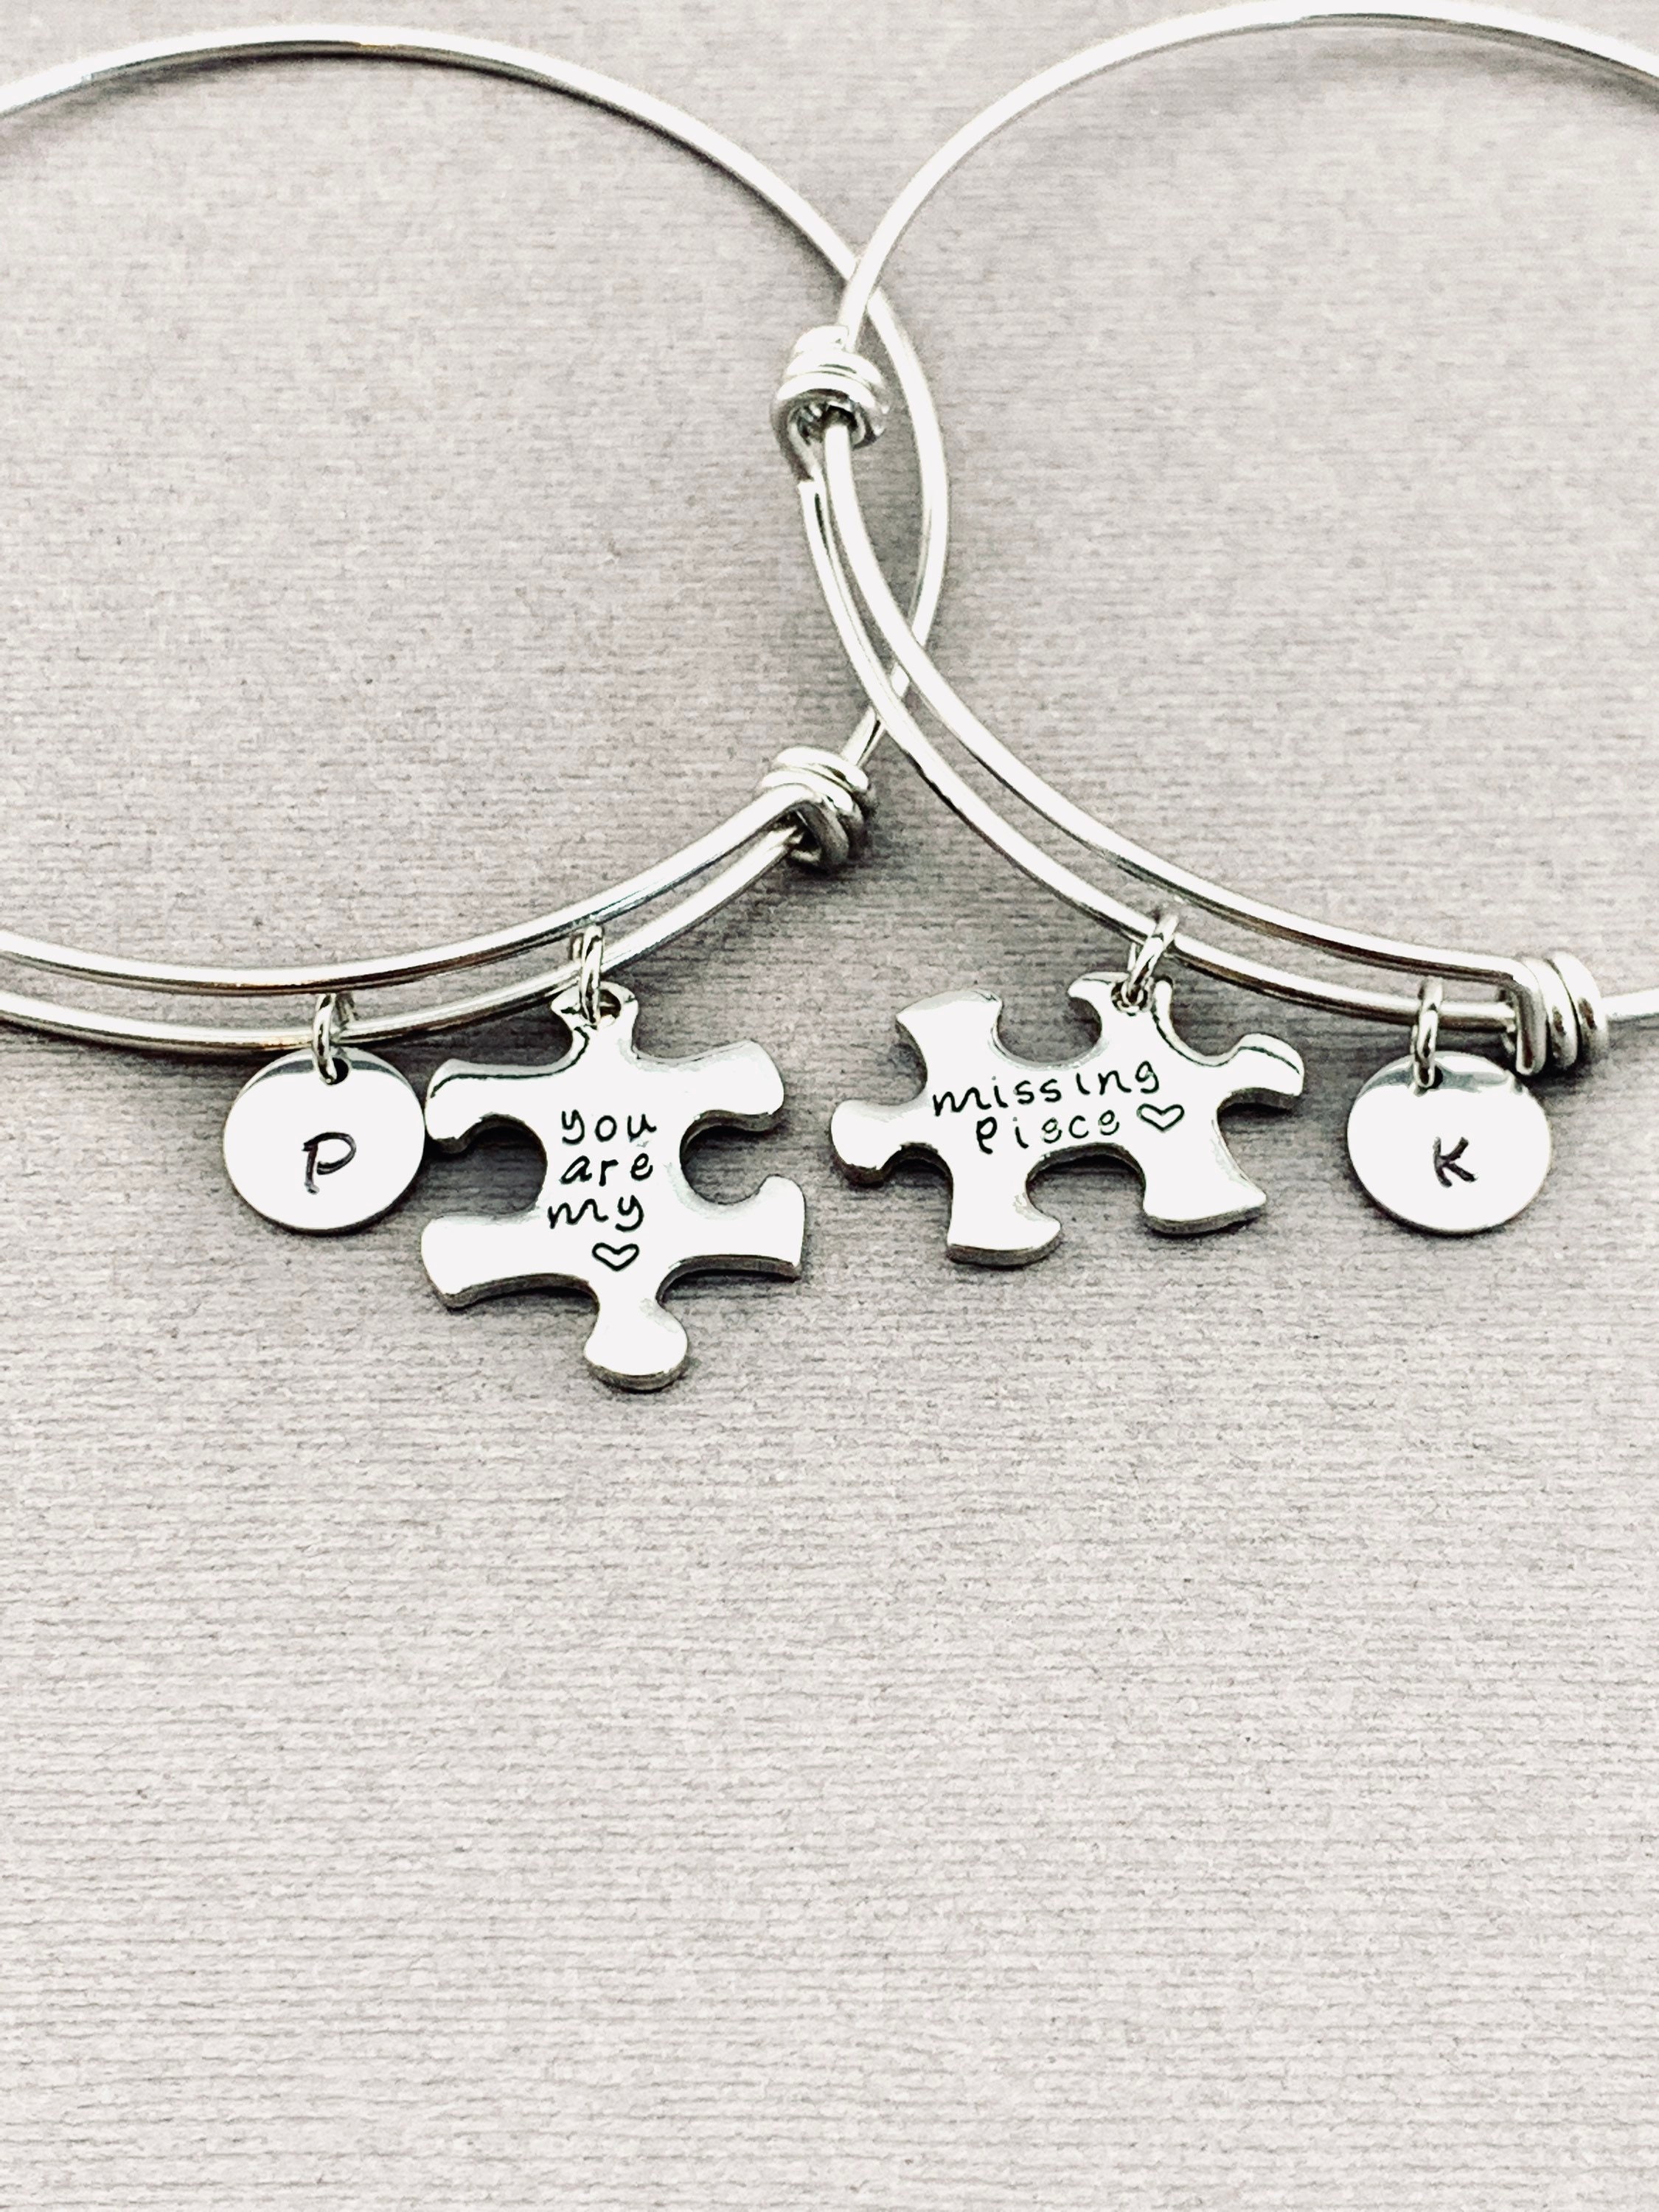 Unique Matching Puzzle Piece Bracelets For Couples In Titanium